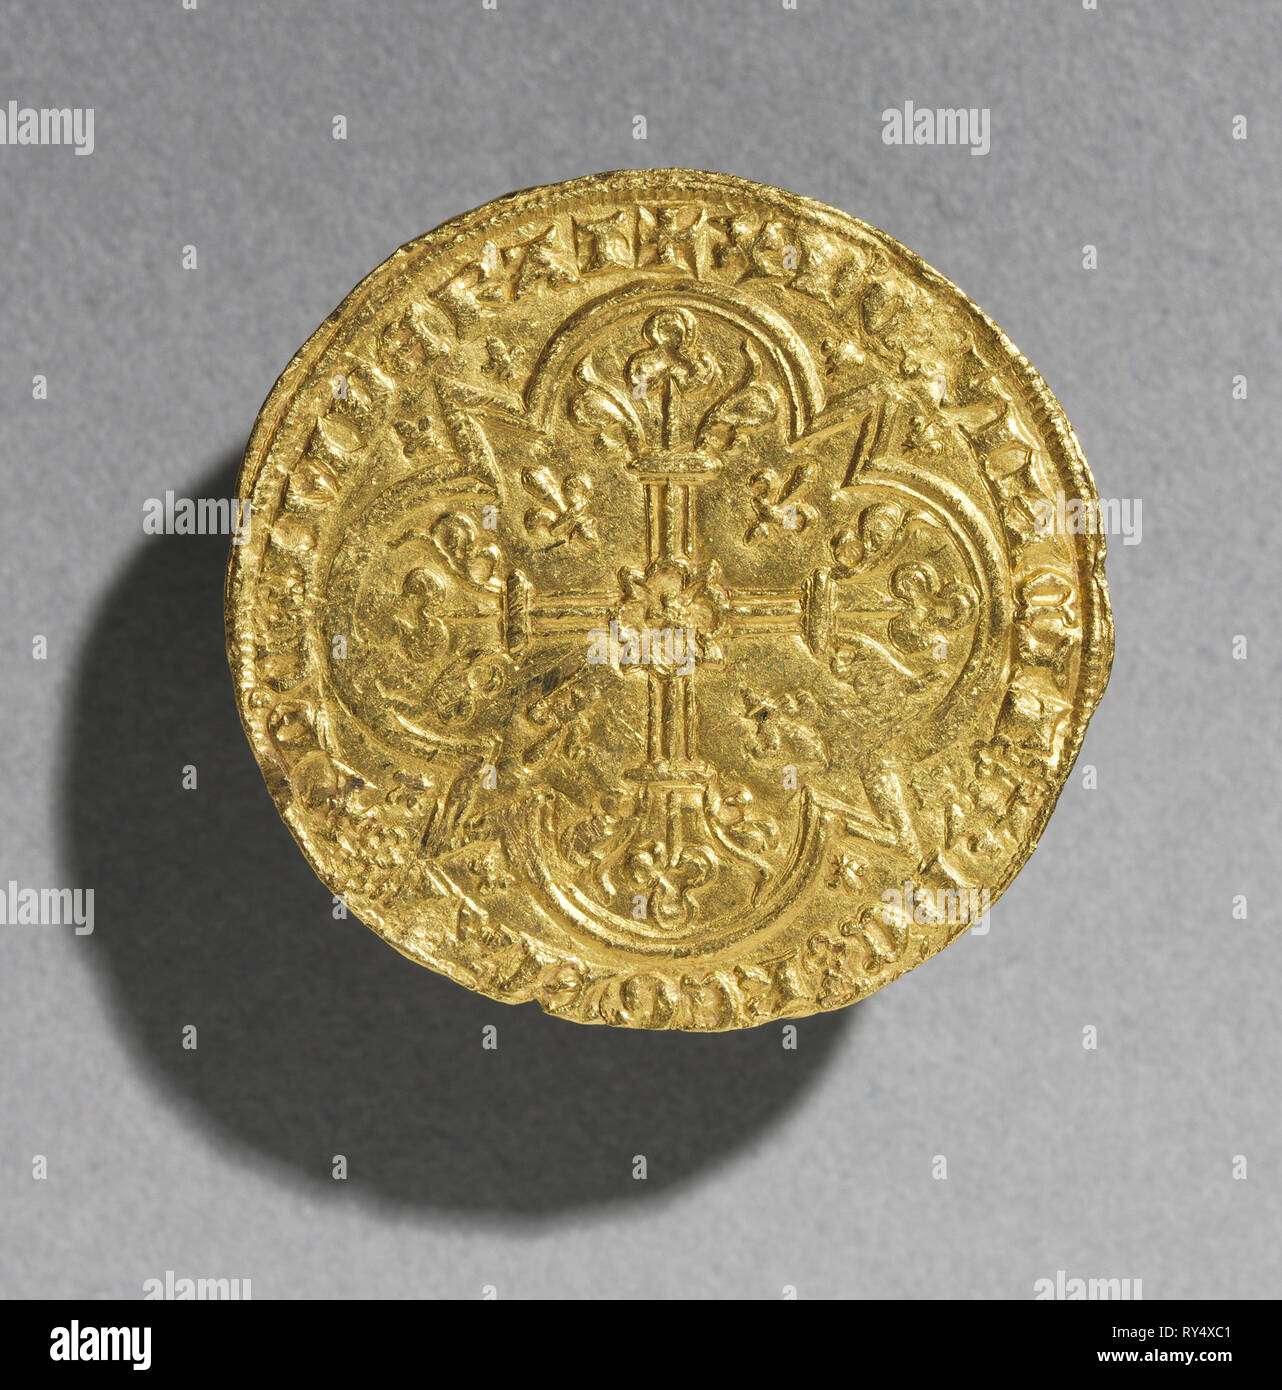 Mouton d'Or de Jean le Bon roi de France, 1350-1364 (en marche arrière), 1350-1364. La France, de l'époque gothique, 14e siècle. Or, diamètre : 3.1 cm (1 1/4 in Banque D'Images